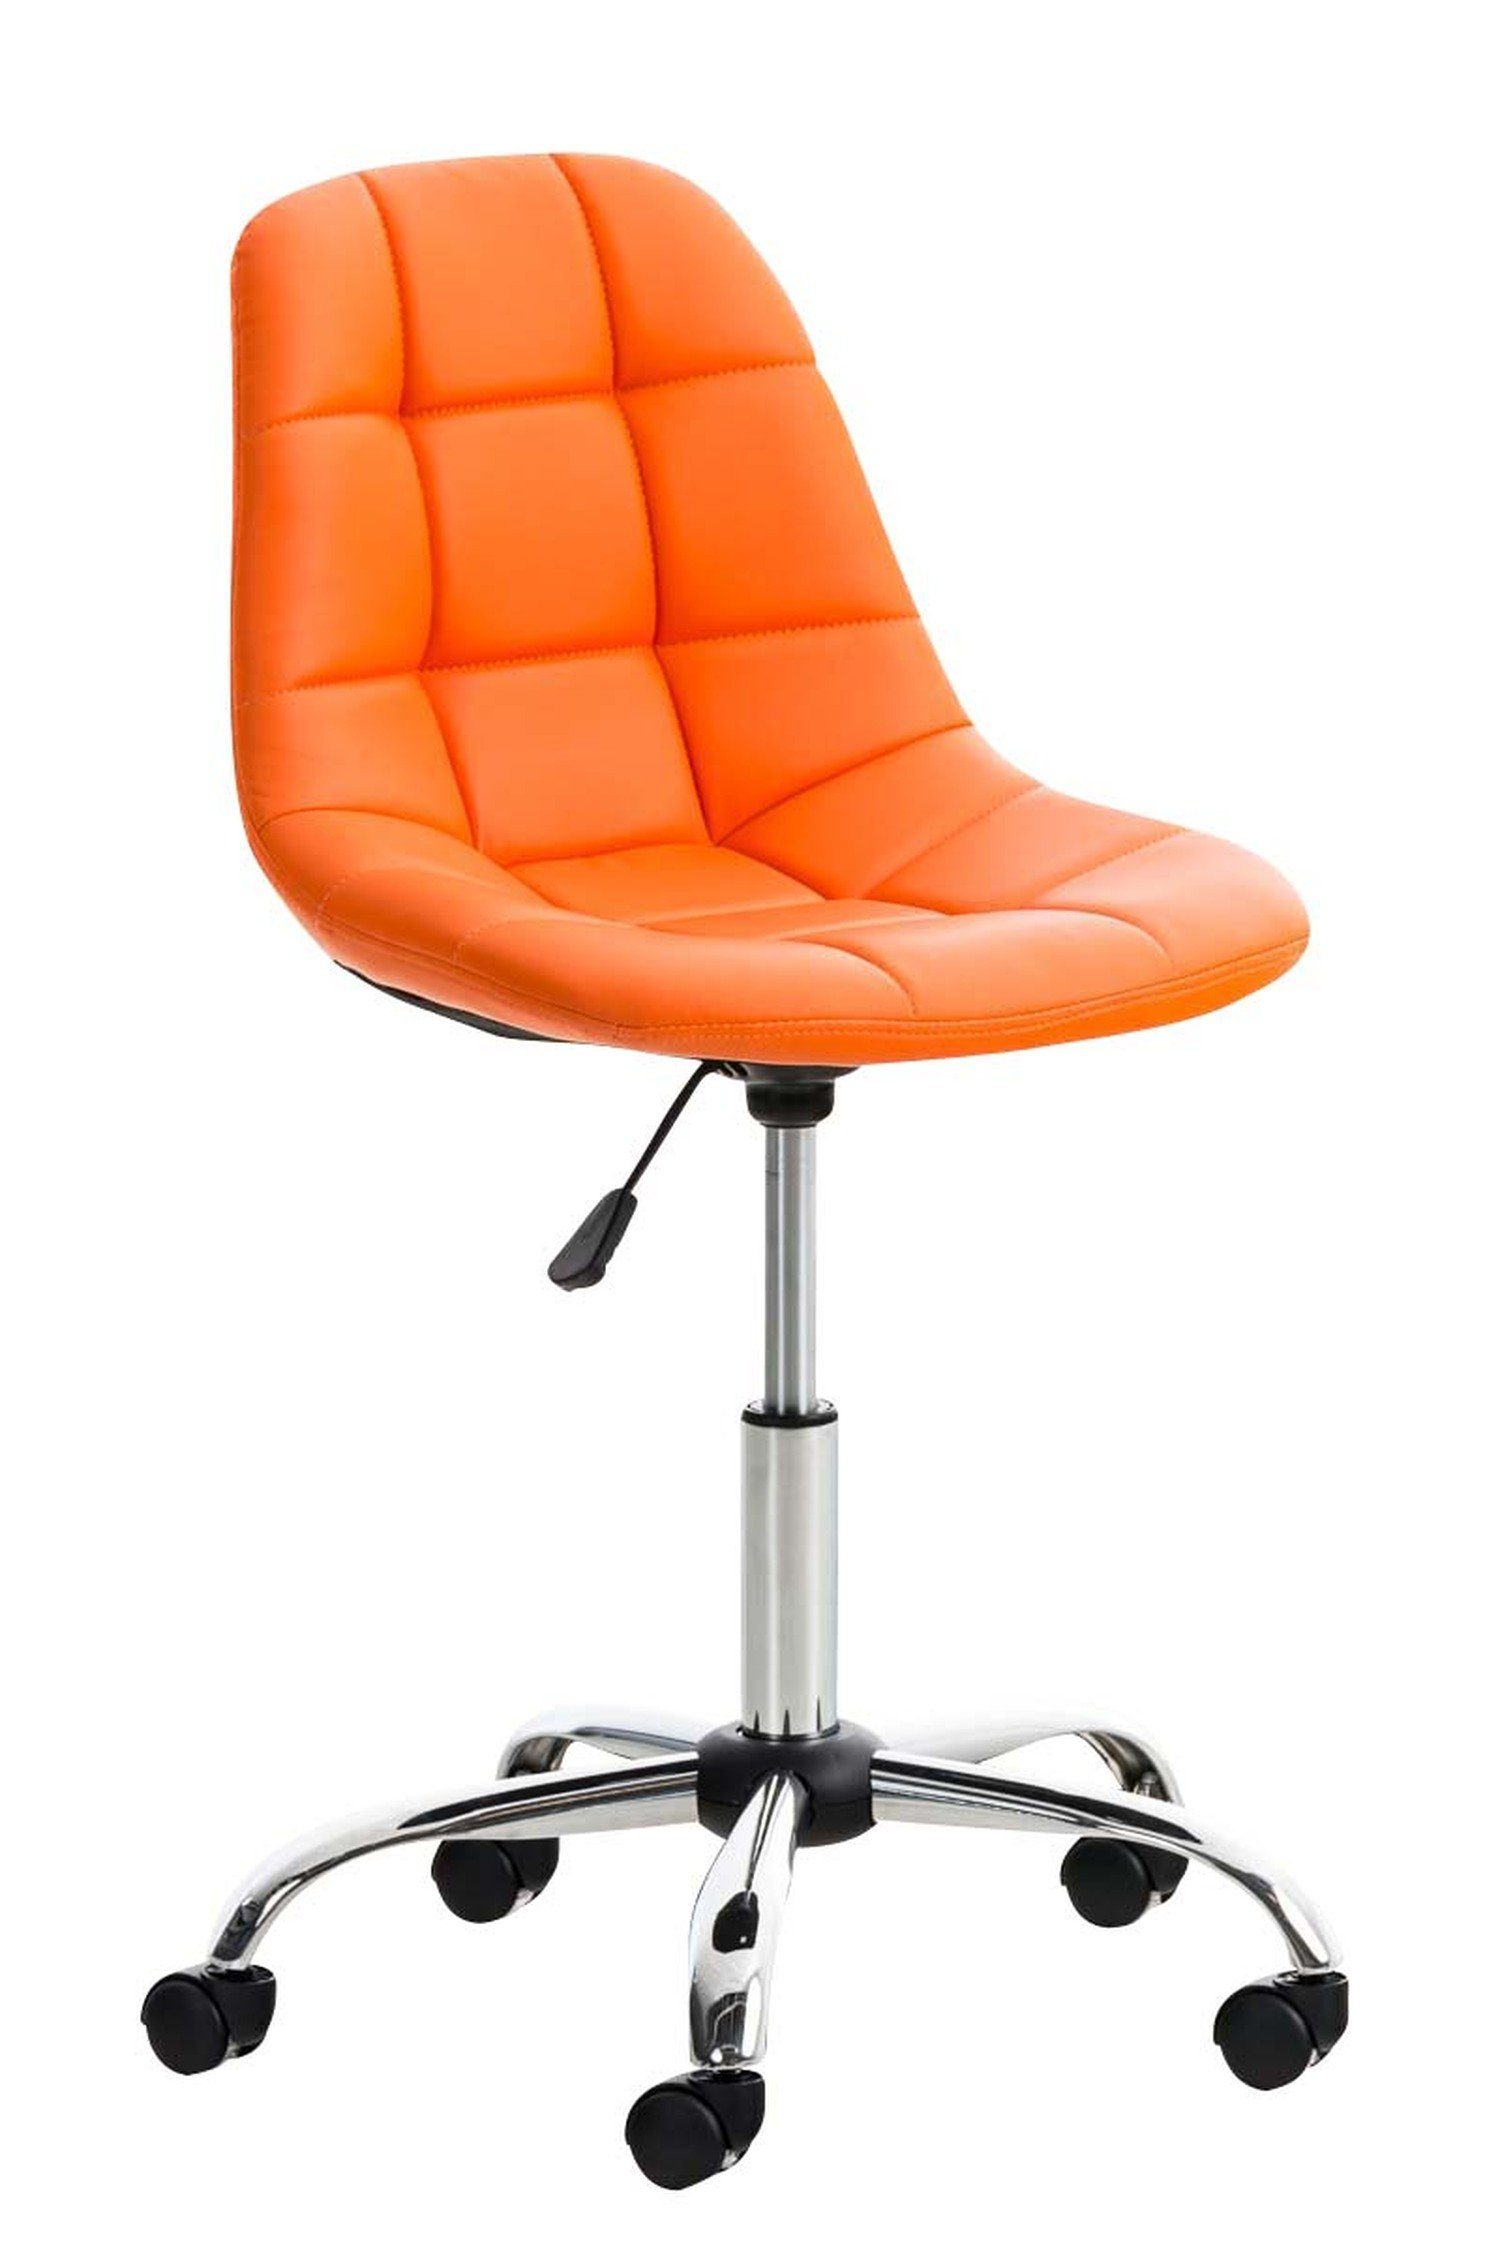 TPFLiving Bürostuhl Emily mit bequemer Rückenlehne - höhenverstellbar und 360° drehbar (Schreibtischstuhl, Drehstuhl, Chefsessel, Konferenzstuhl), Gestell: Metall chrom - Sitzfläche: Kunstleder orange